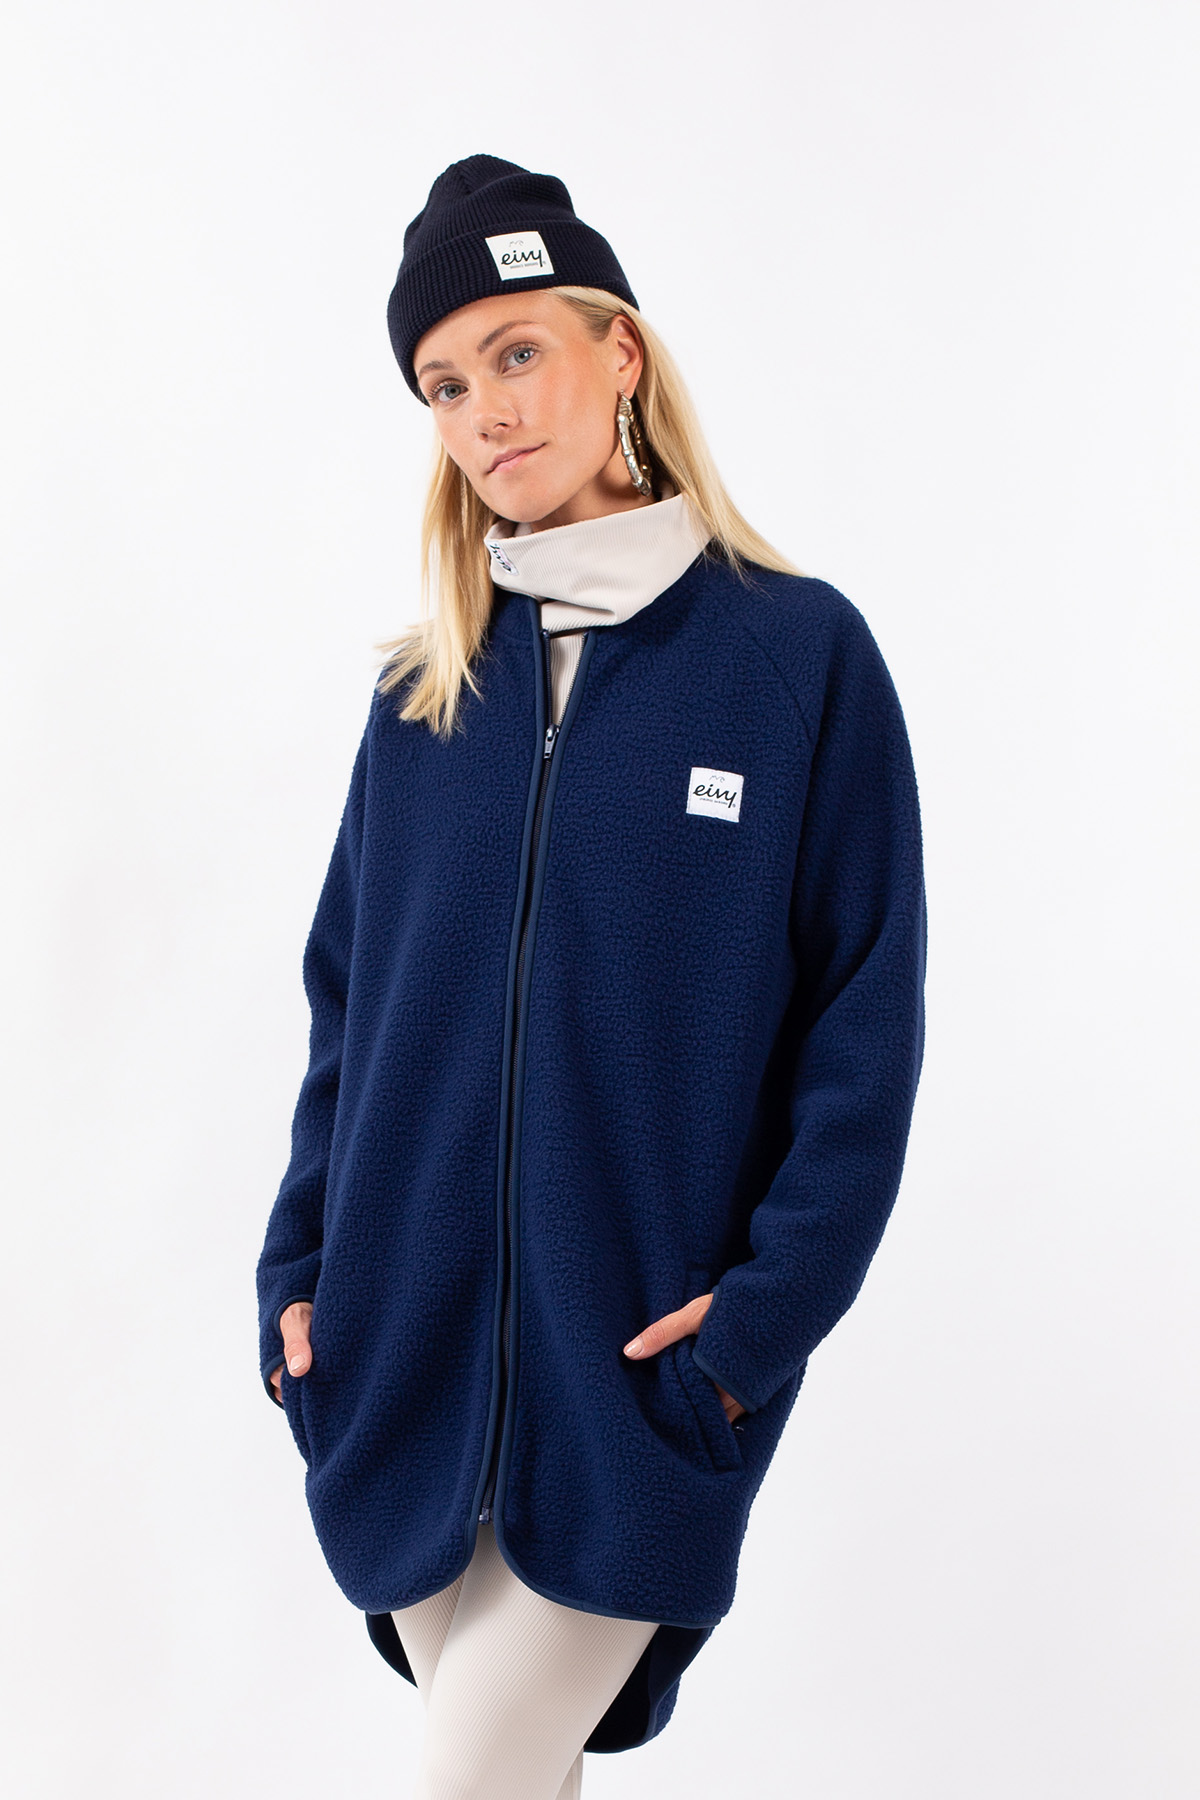 Fleece for women - Snowboard clothes | Eivy